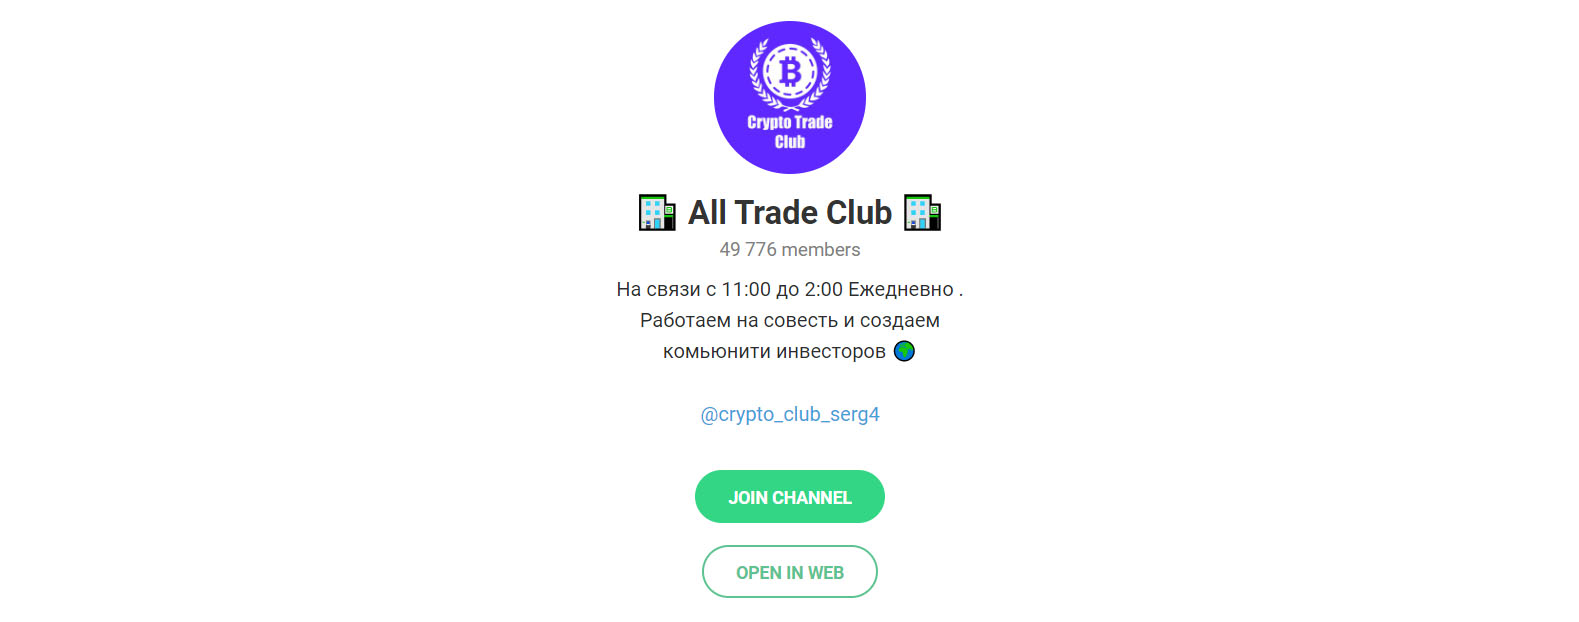 Внешний вид телеграм канала All Trade Club